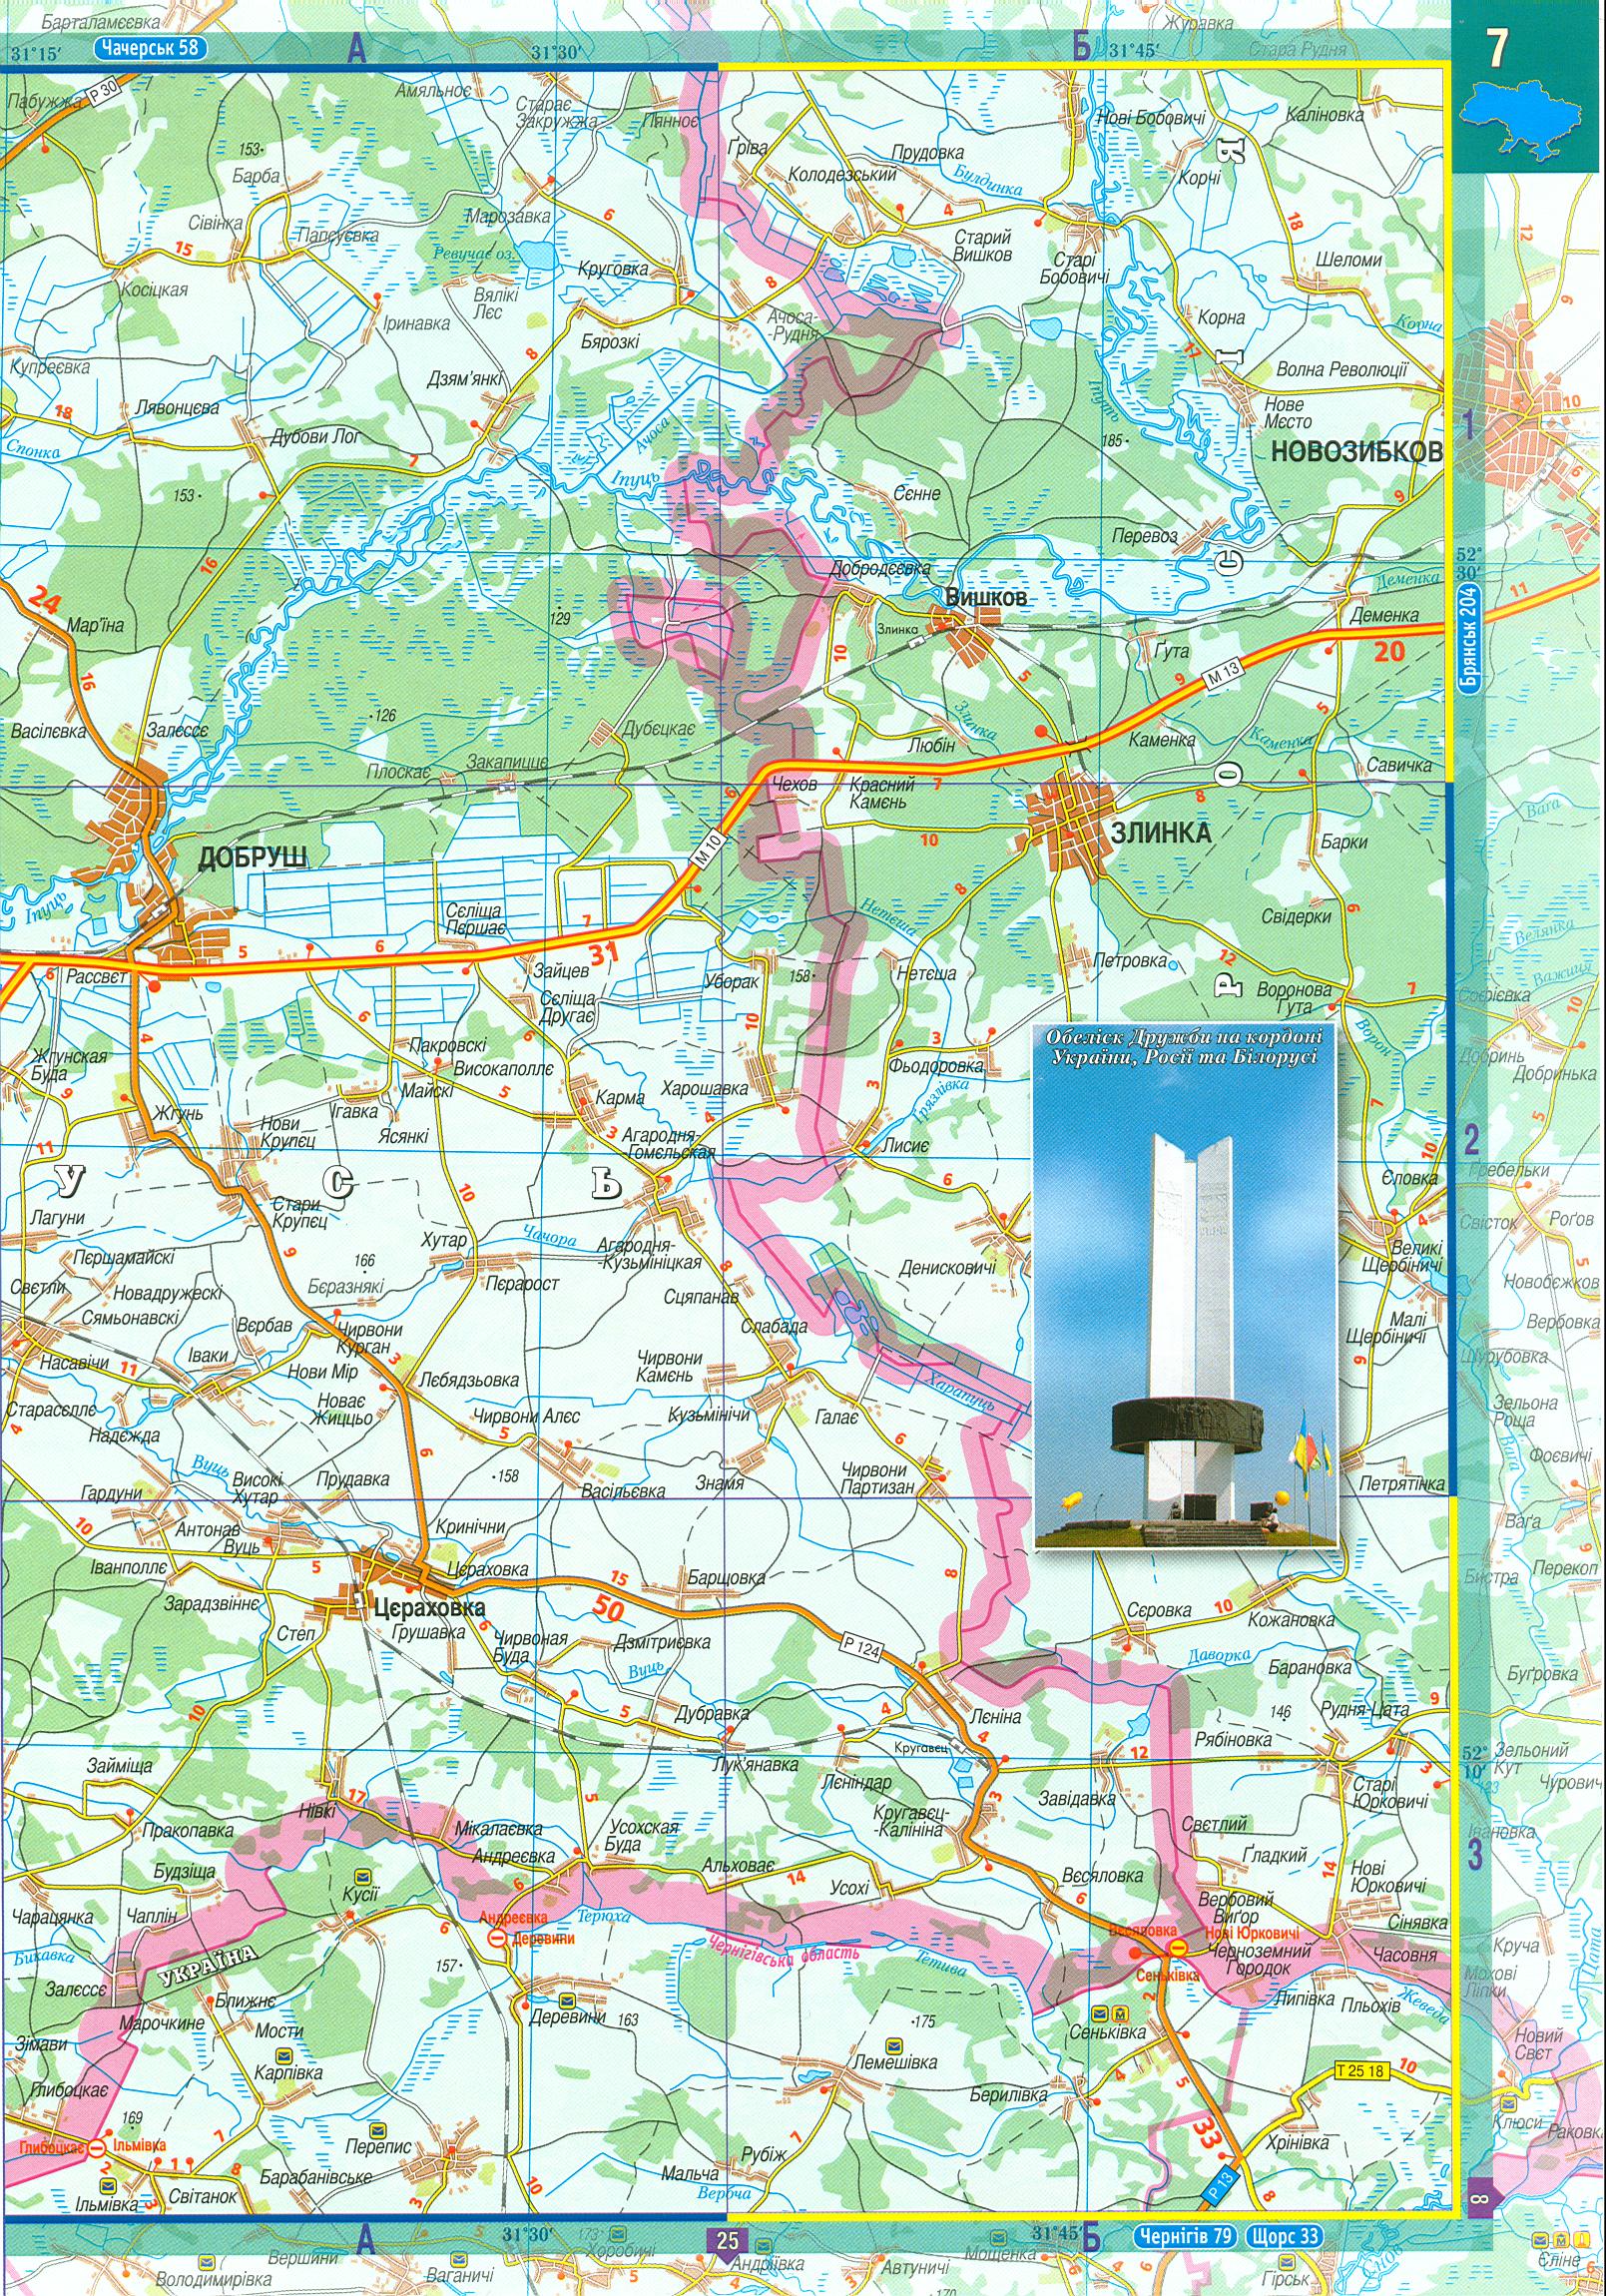 Карта Черниговской области. Атлас автомобильных дорог Украины 1см:2,5км - карта Черниговской области, B0 - 